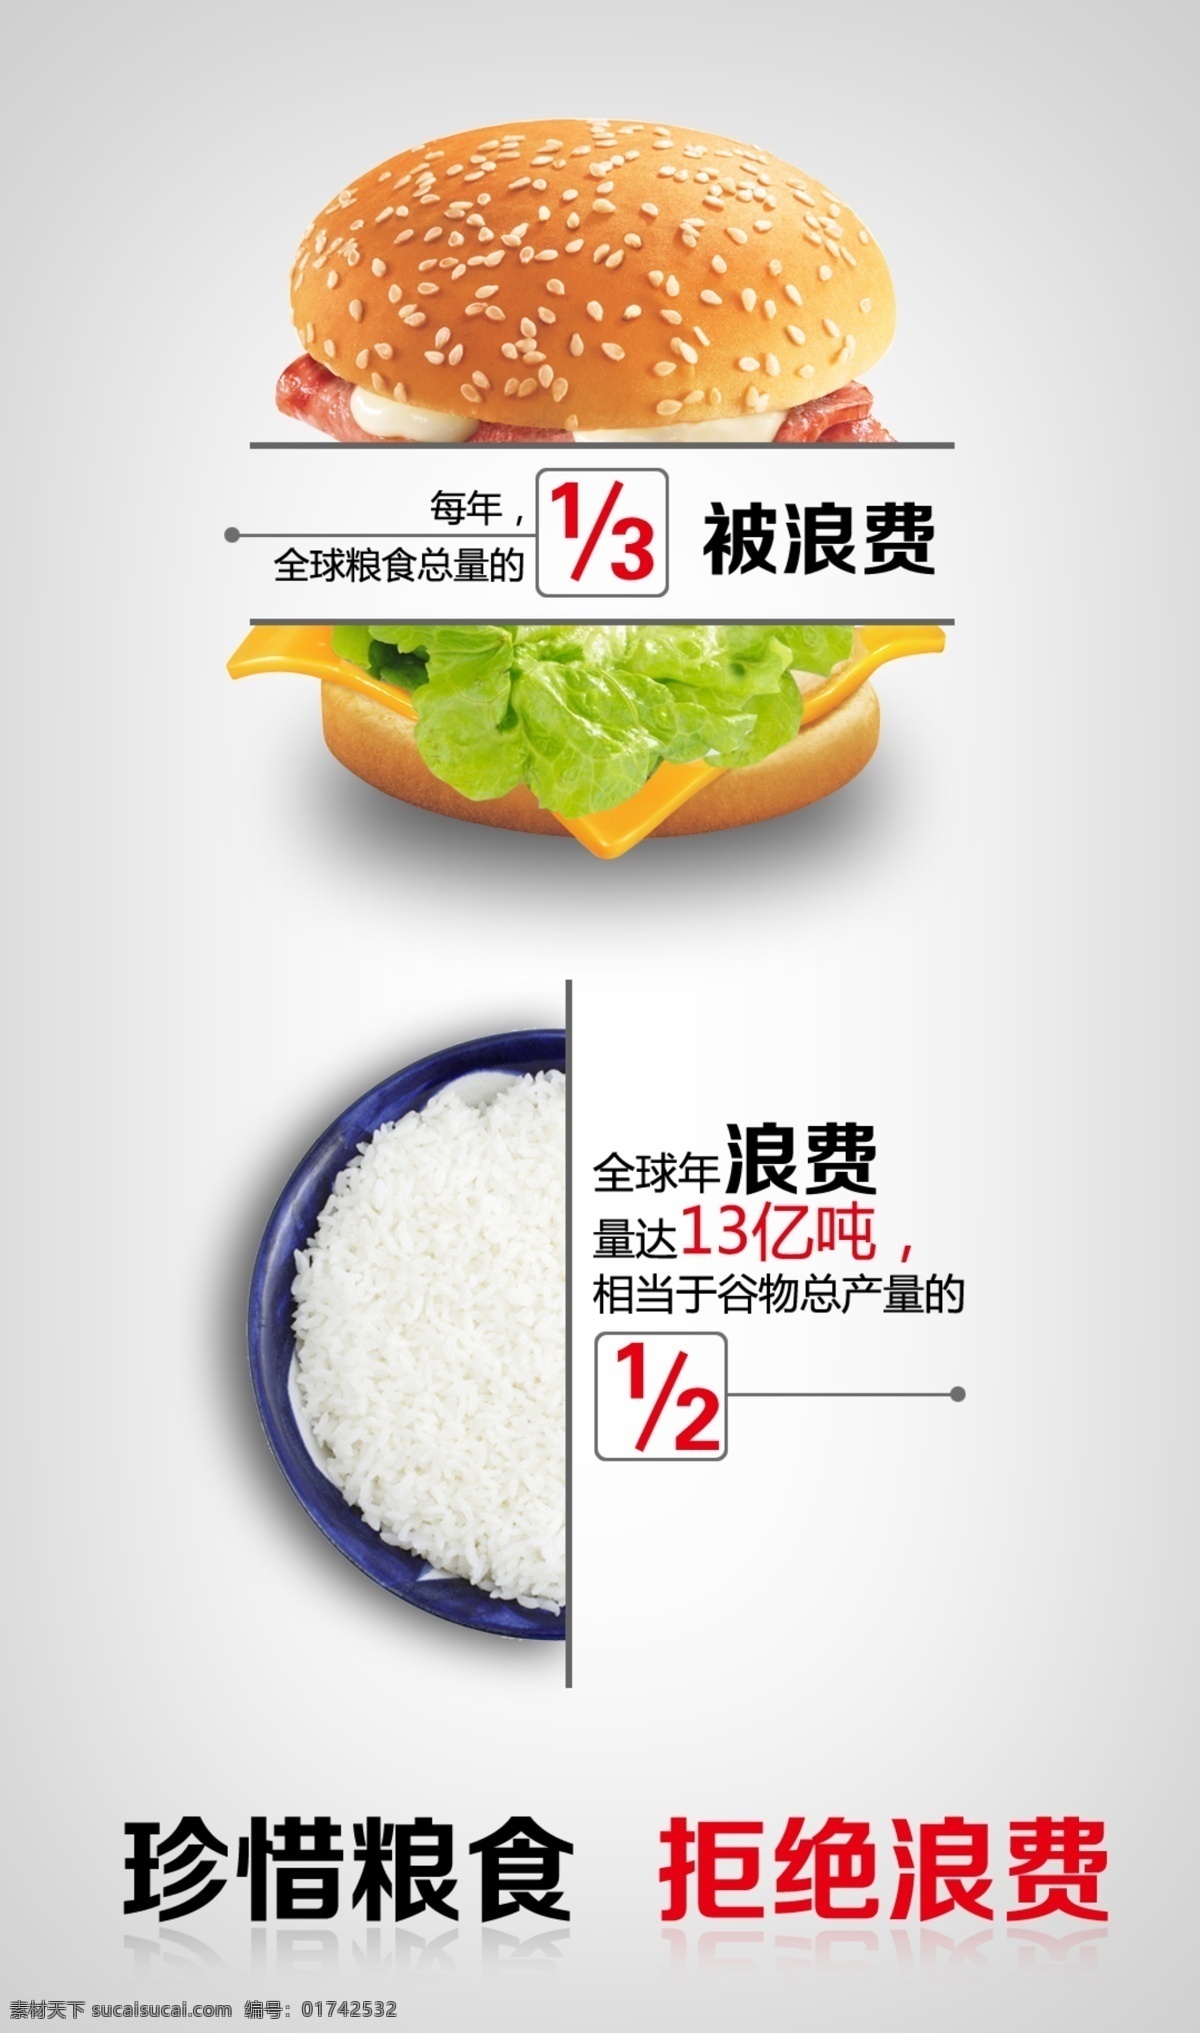 珍惜 粮食 反对浪费 汉堡 米饭 招贴设计 珍惜粮食 拒绝浪费 浪费可耻 海报 其他海报设计